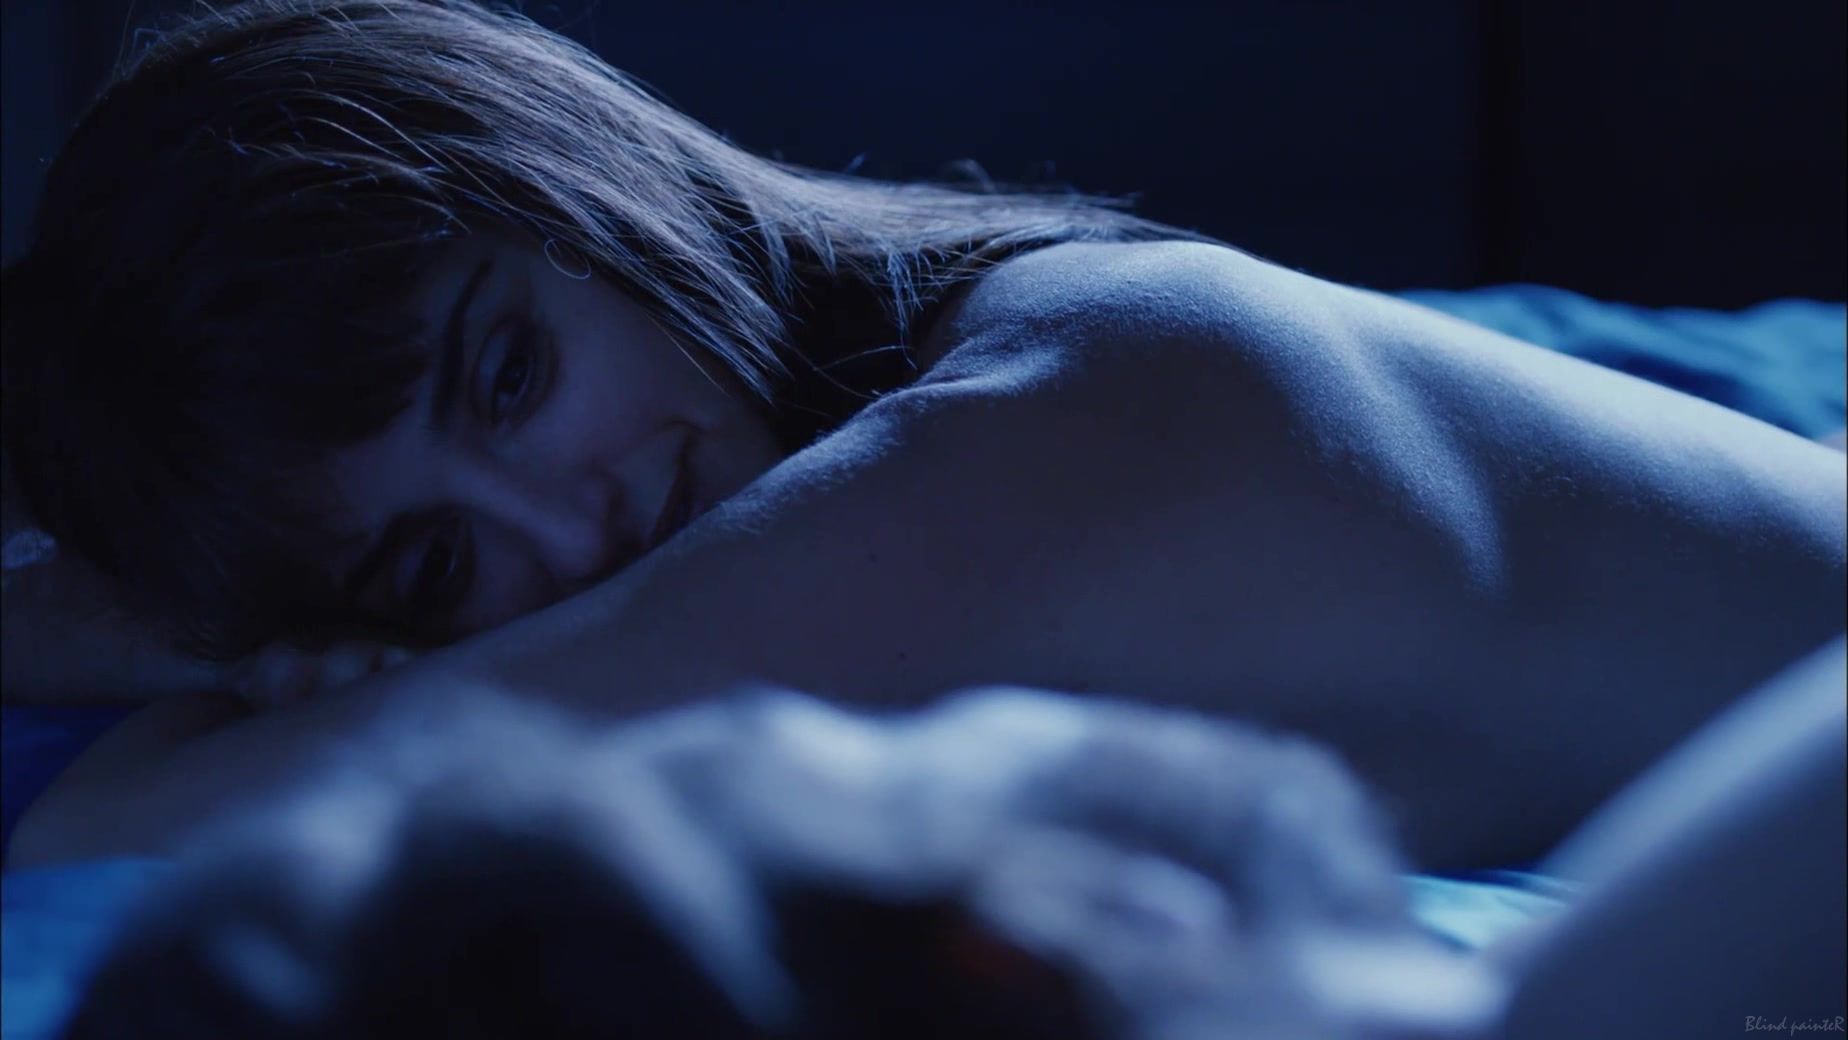 Gay Massage Penelope Cruz nude - Venuto Al Mondo (2012) Tan